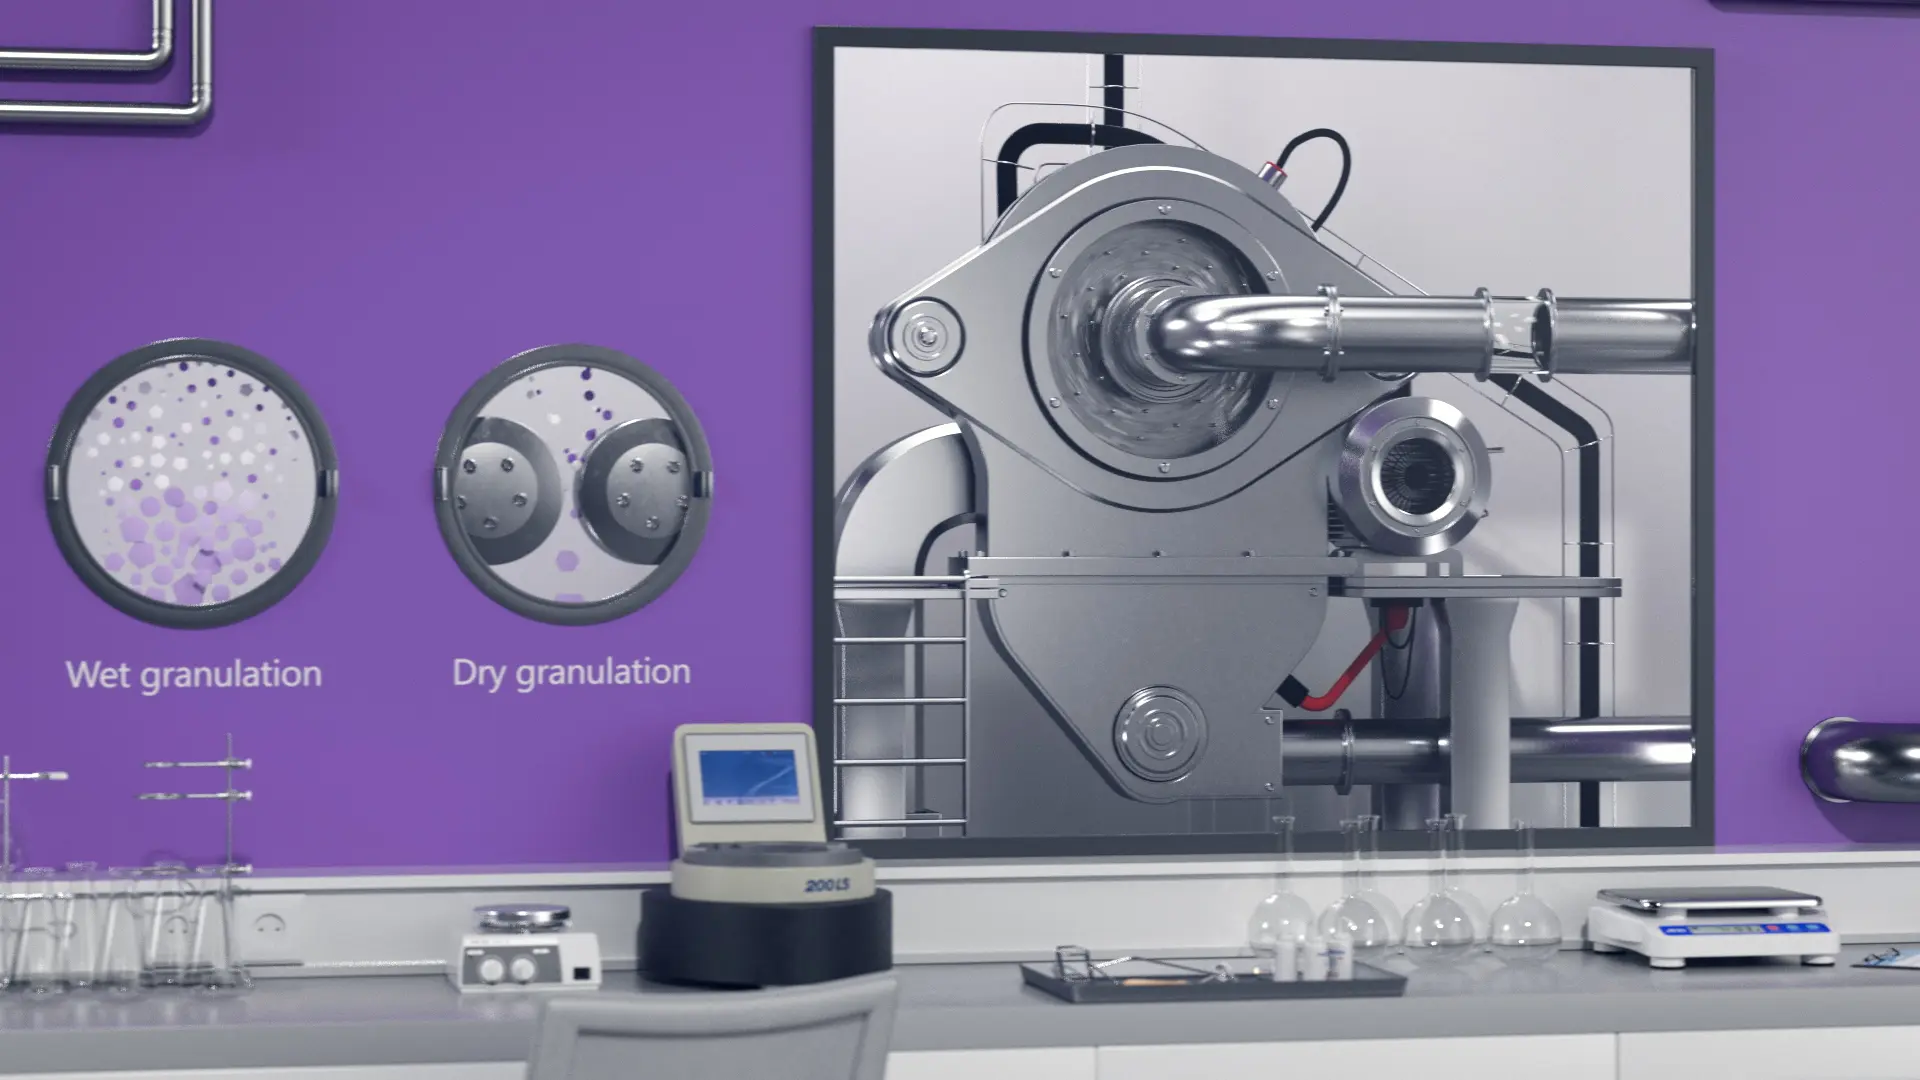 Maschinen für Feucht- und Trockengranulation, dargestellt auf lila Hintergrund in einem modernen Labor, mit nahen Details.